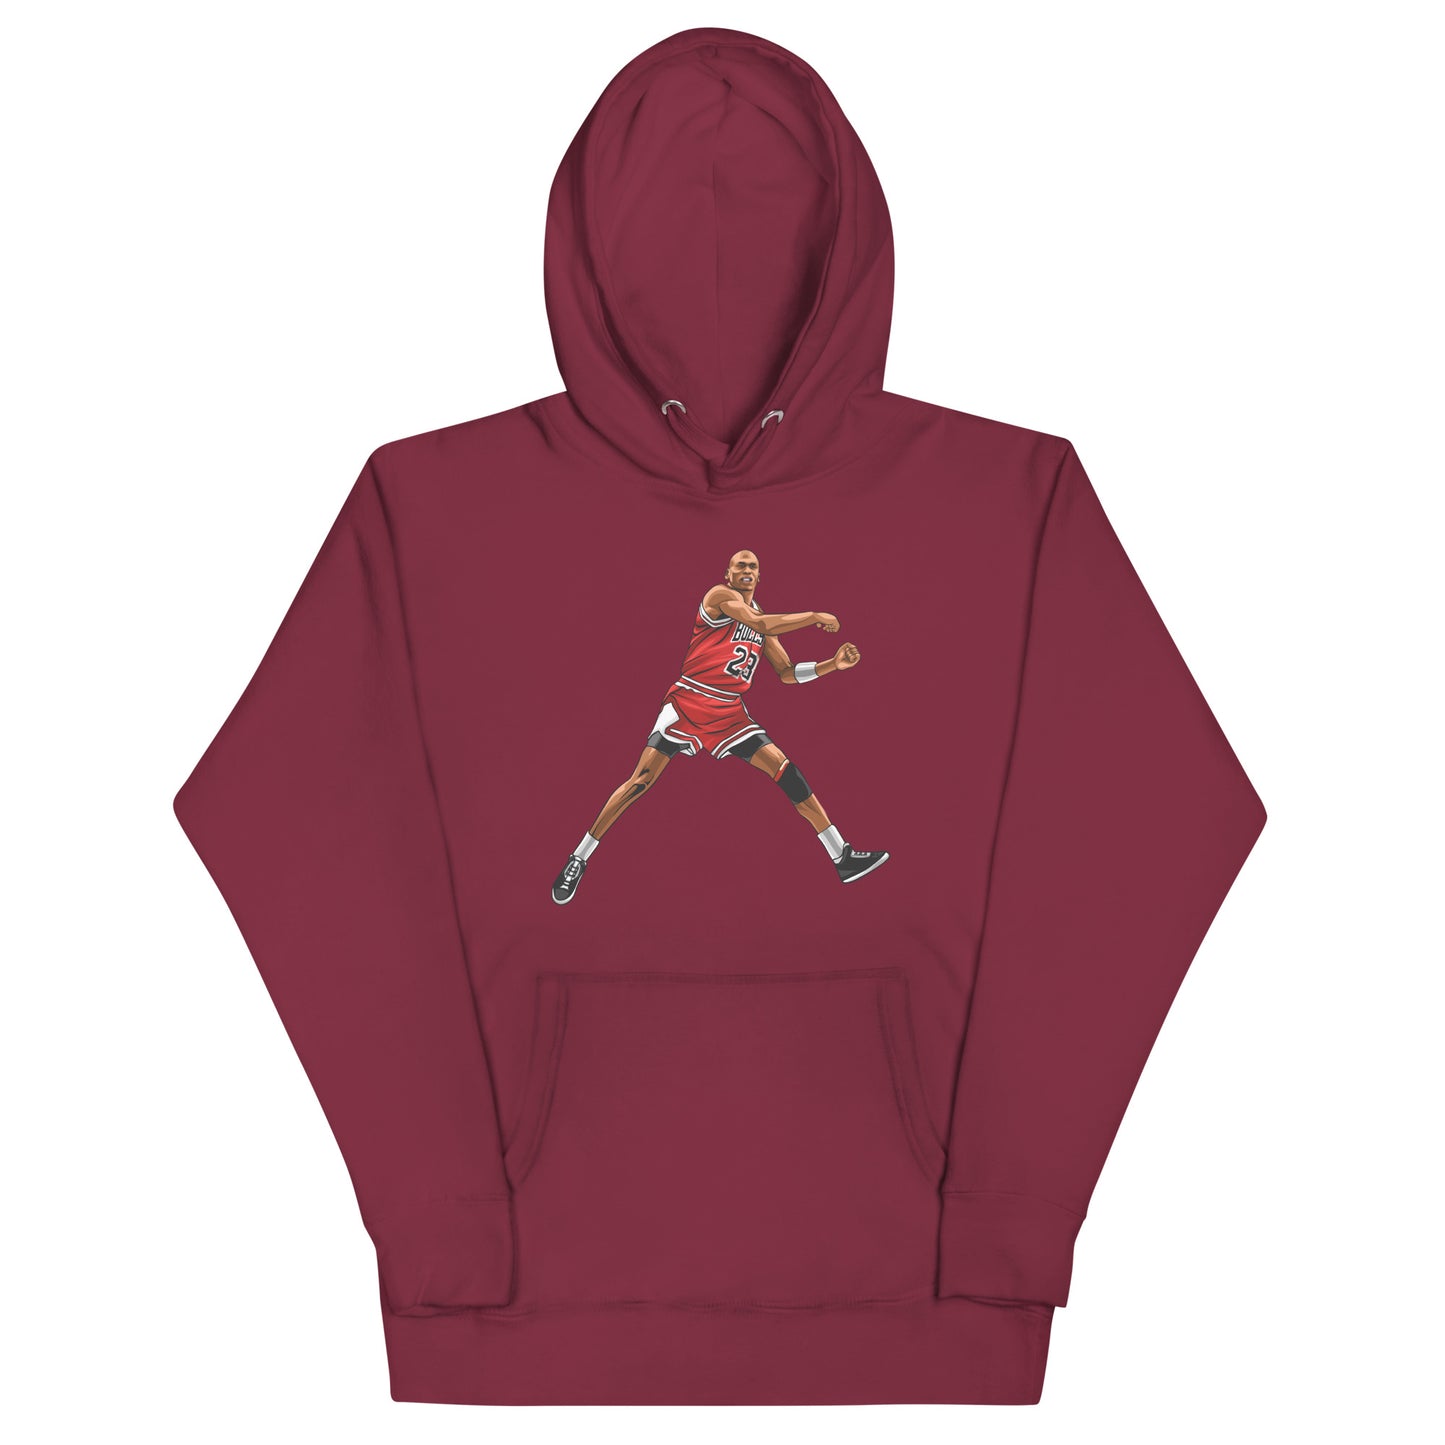 Michael Jordan - "The Shot" hoodie